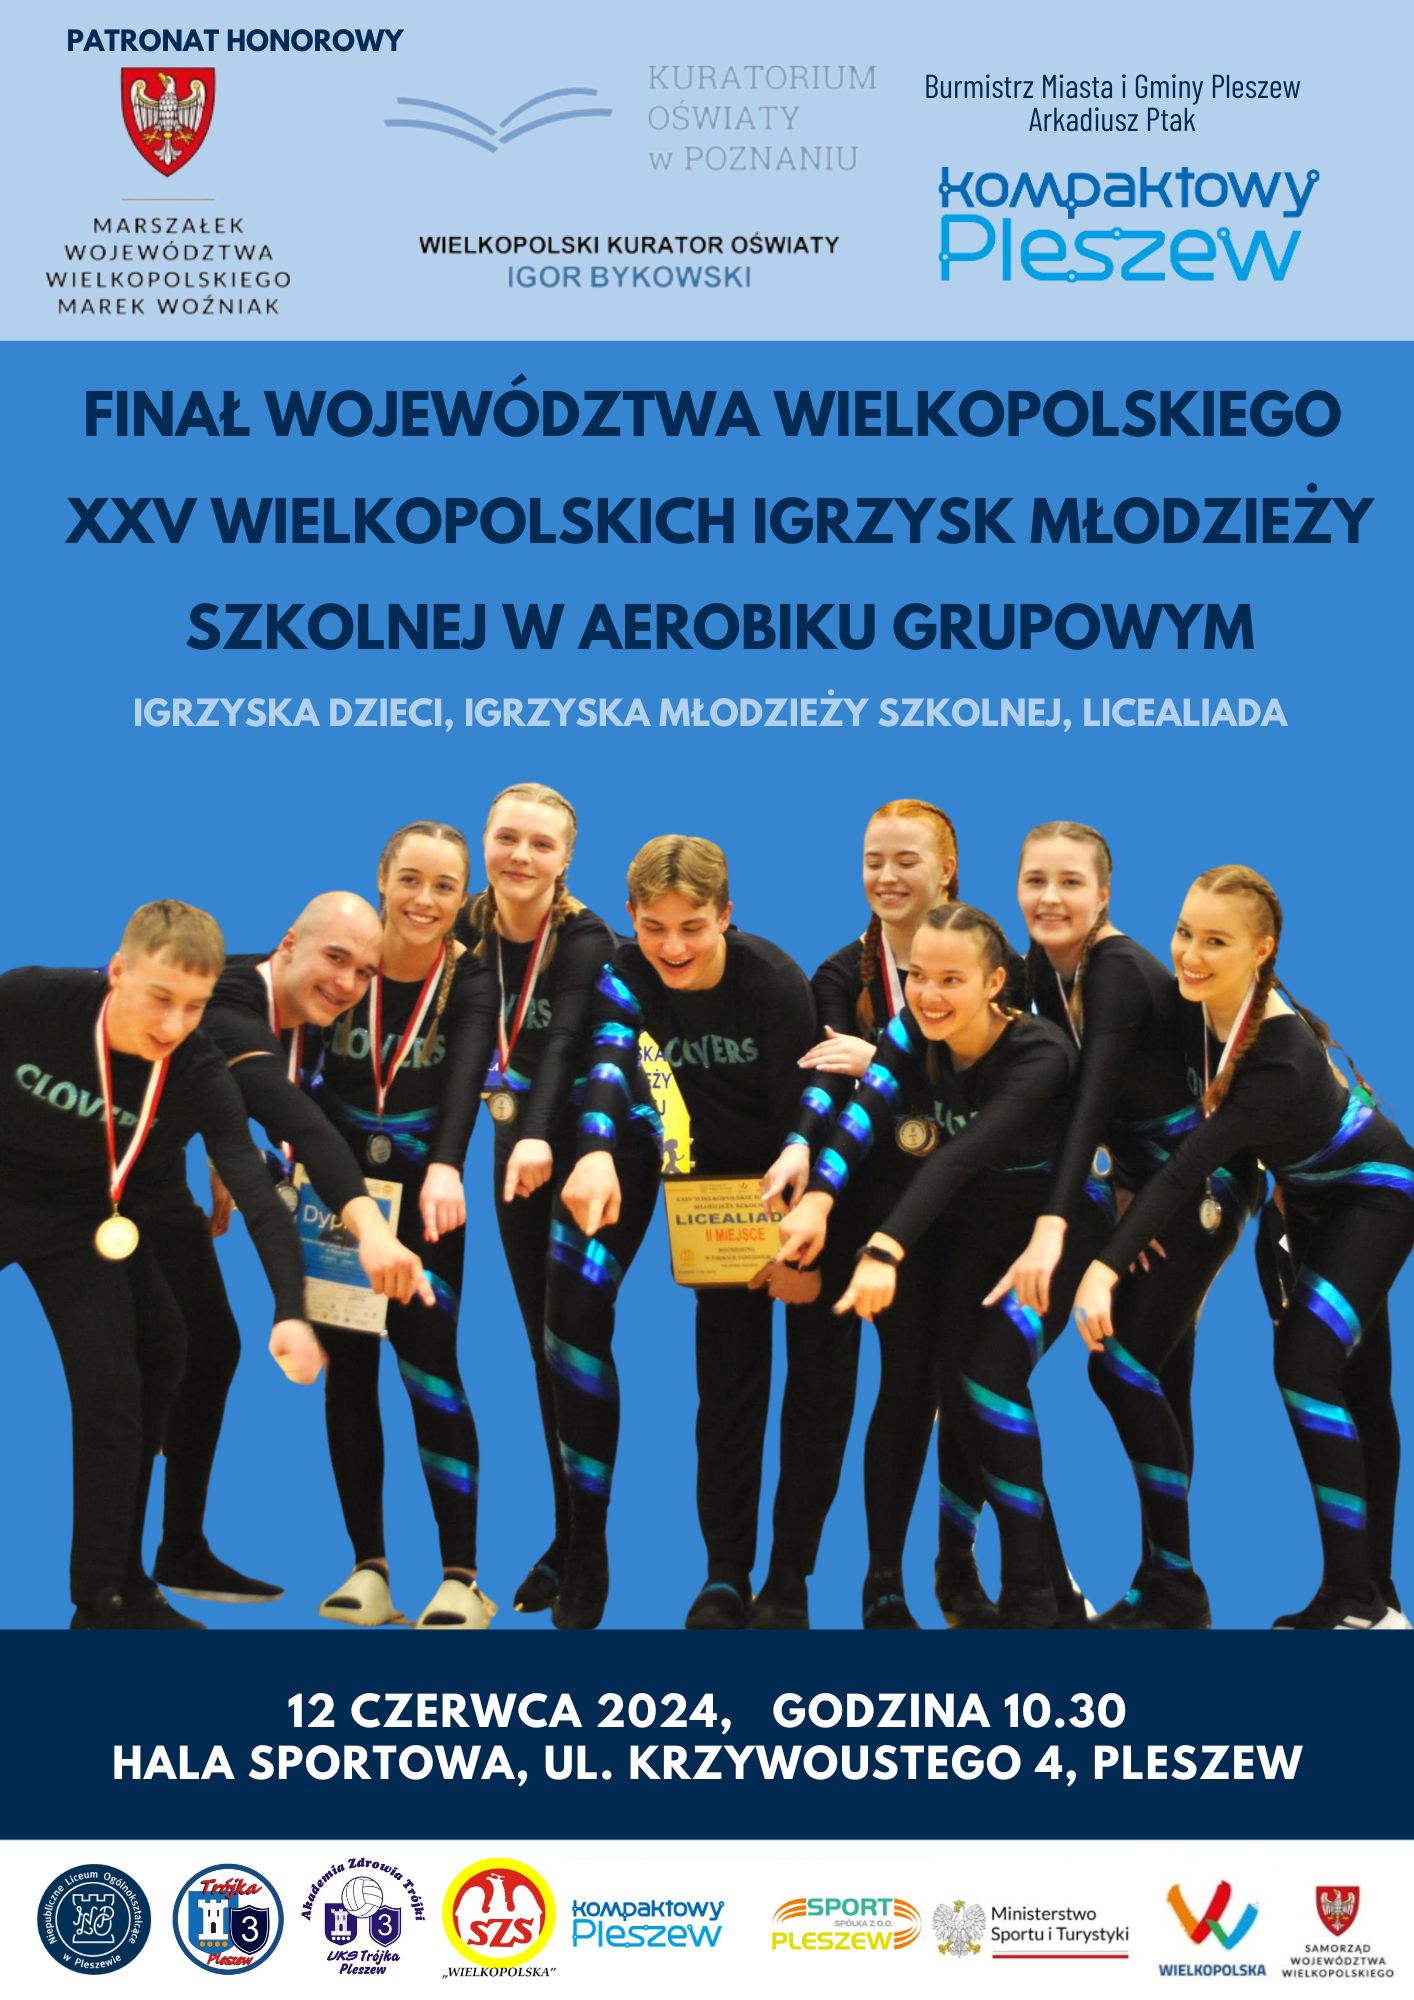 Plakat finału województwa wielkopolskiego w aerobiku grupowym odbywajacego się 12 czerwca 2024 r. o godzinie 10:30 w Hali Sportowej w Pleszewie.